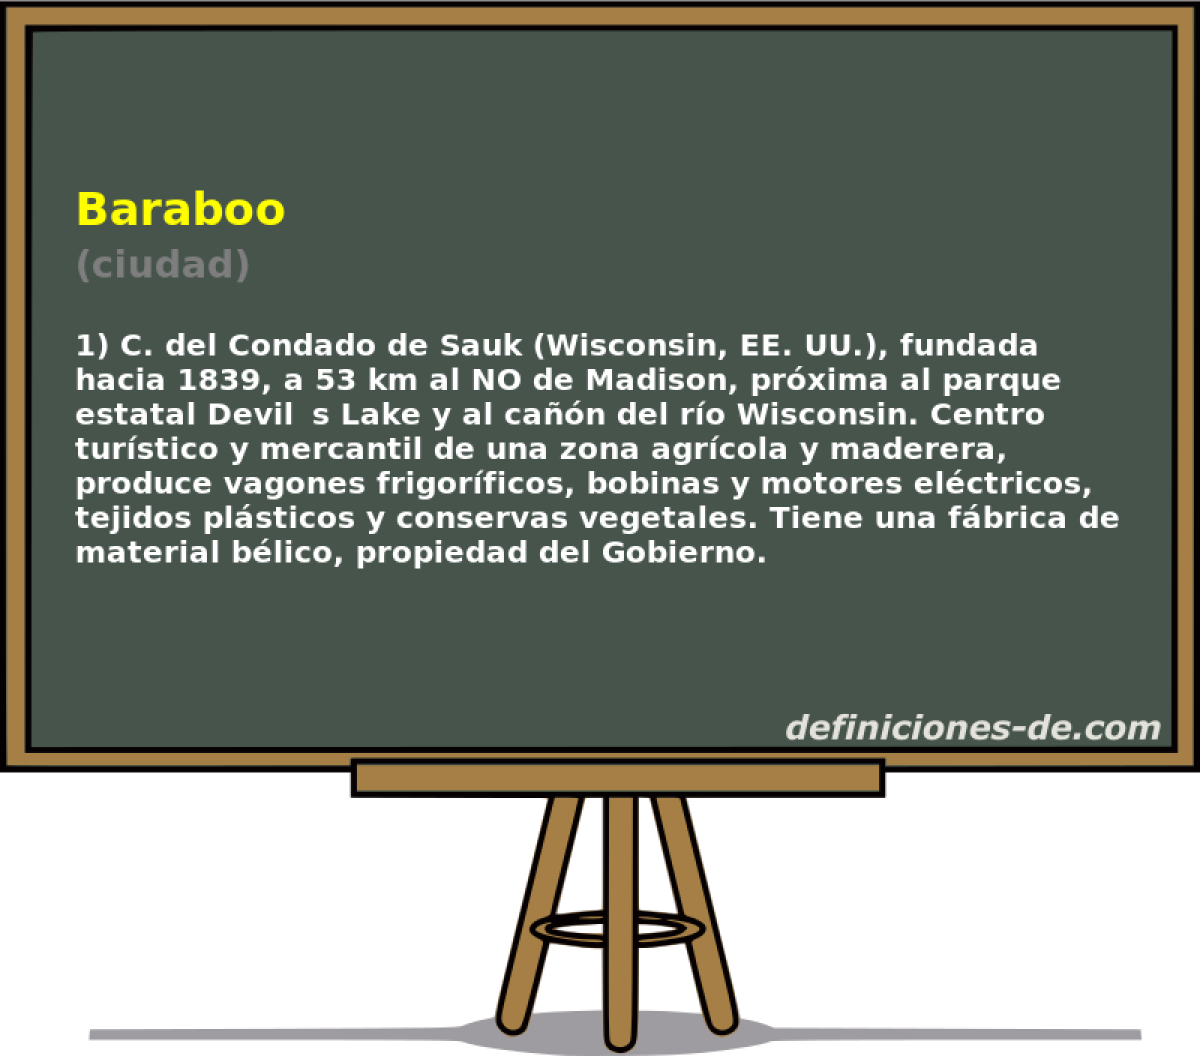 Baraboo (ciudad)